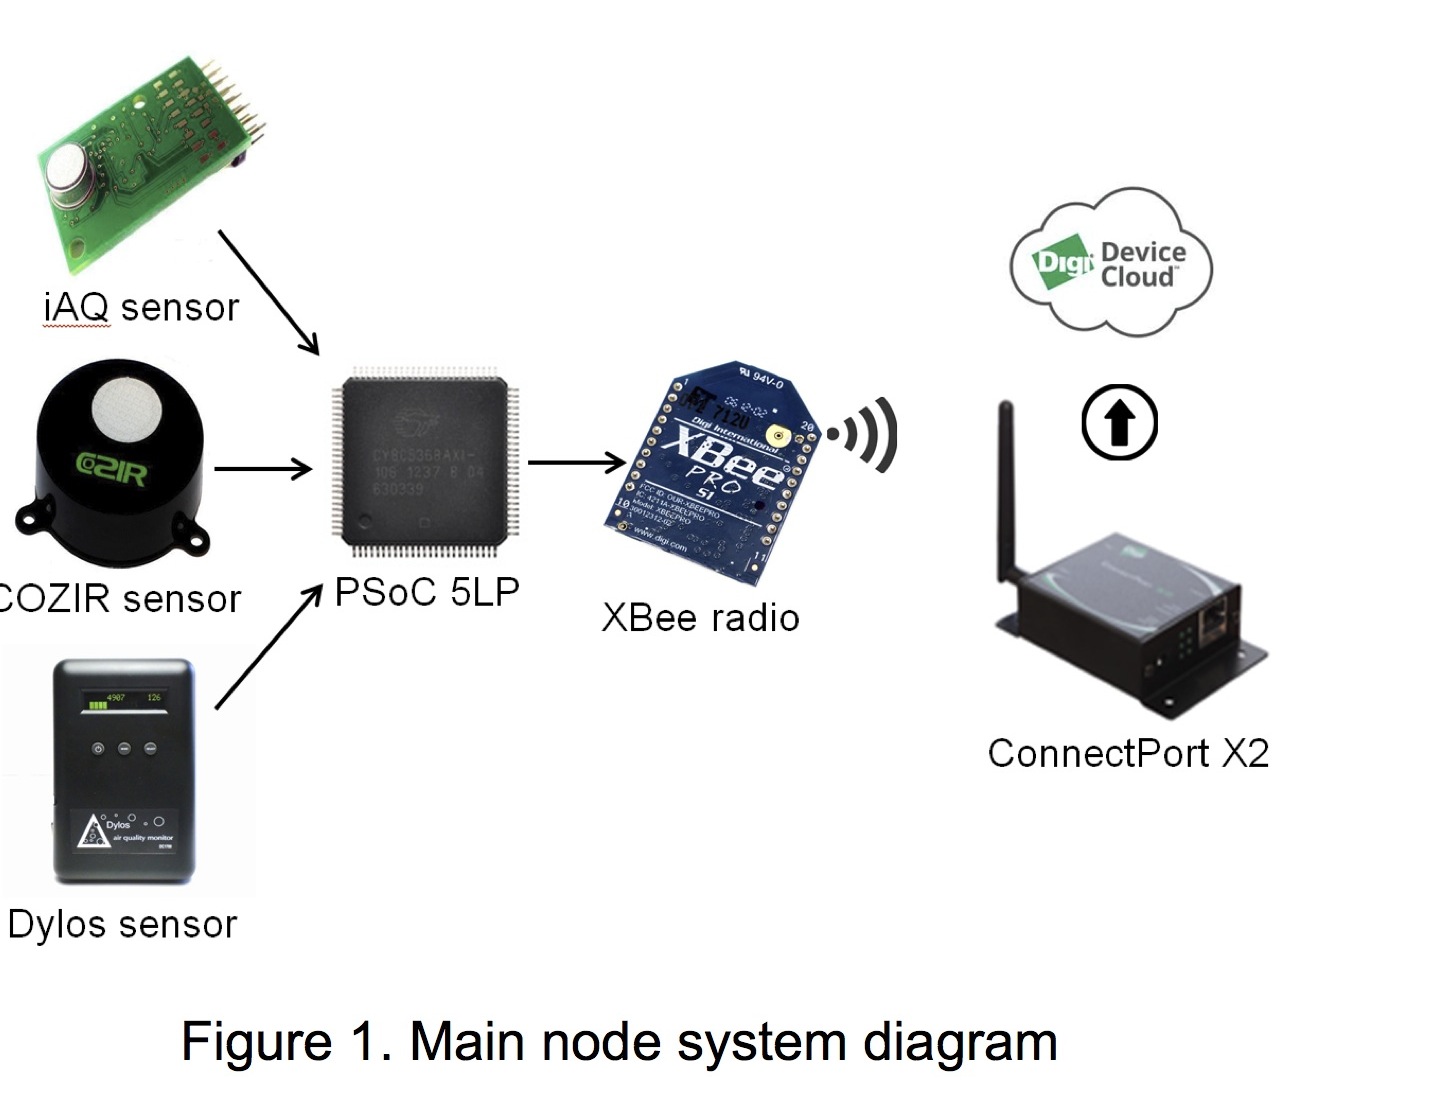 Main node system diagram